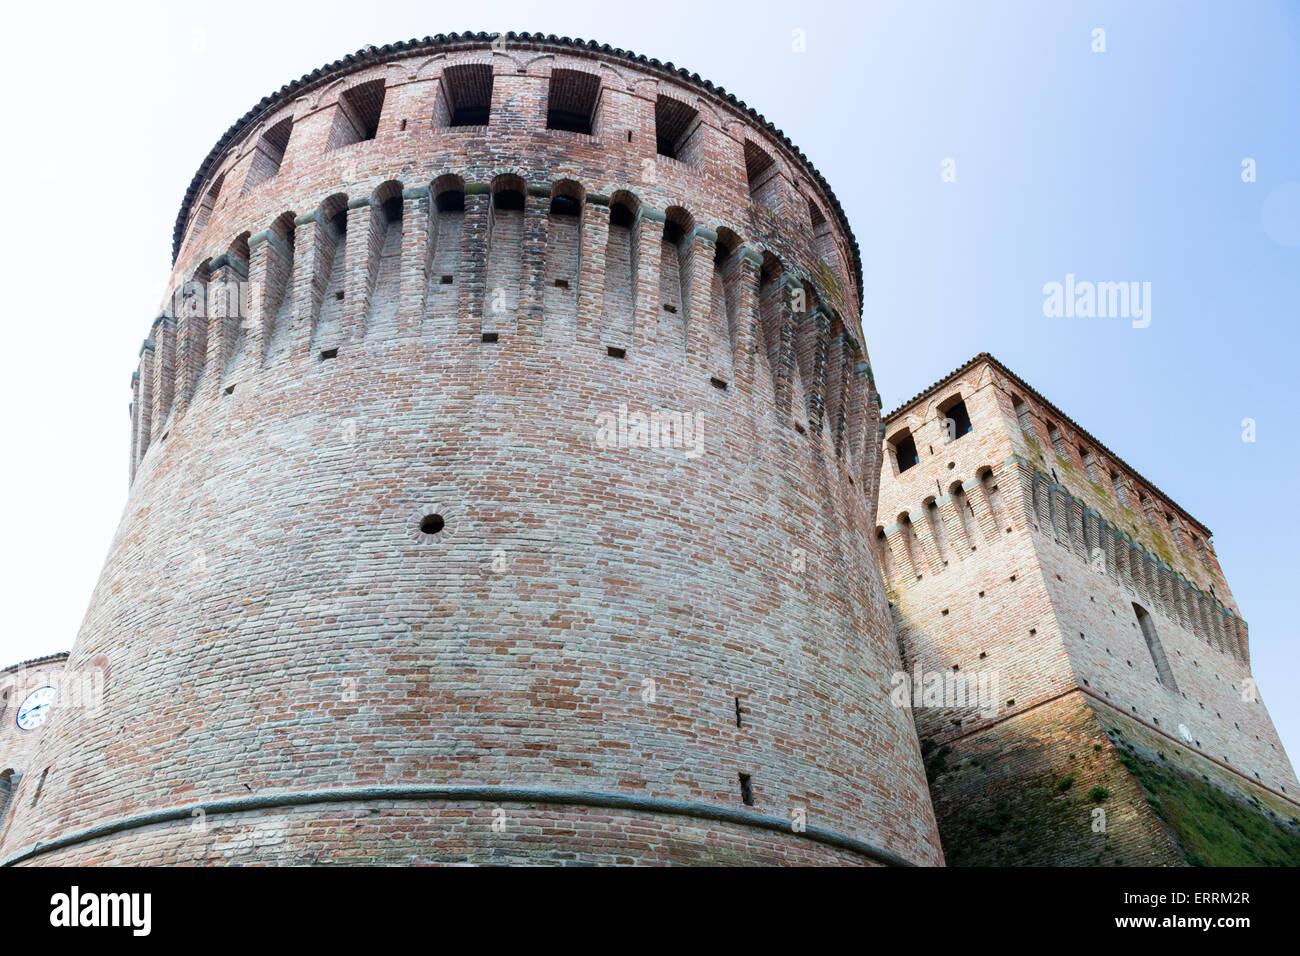 Il senso profondo della storia sottolinea questa fortificazione militare del 1400 nel Nord Italia in Emilia Romagna, nel centro del piccolo paese vecchio villaggio di Riolo Terme. Foto Stock